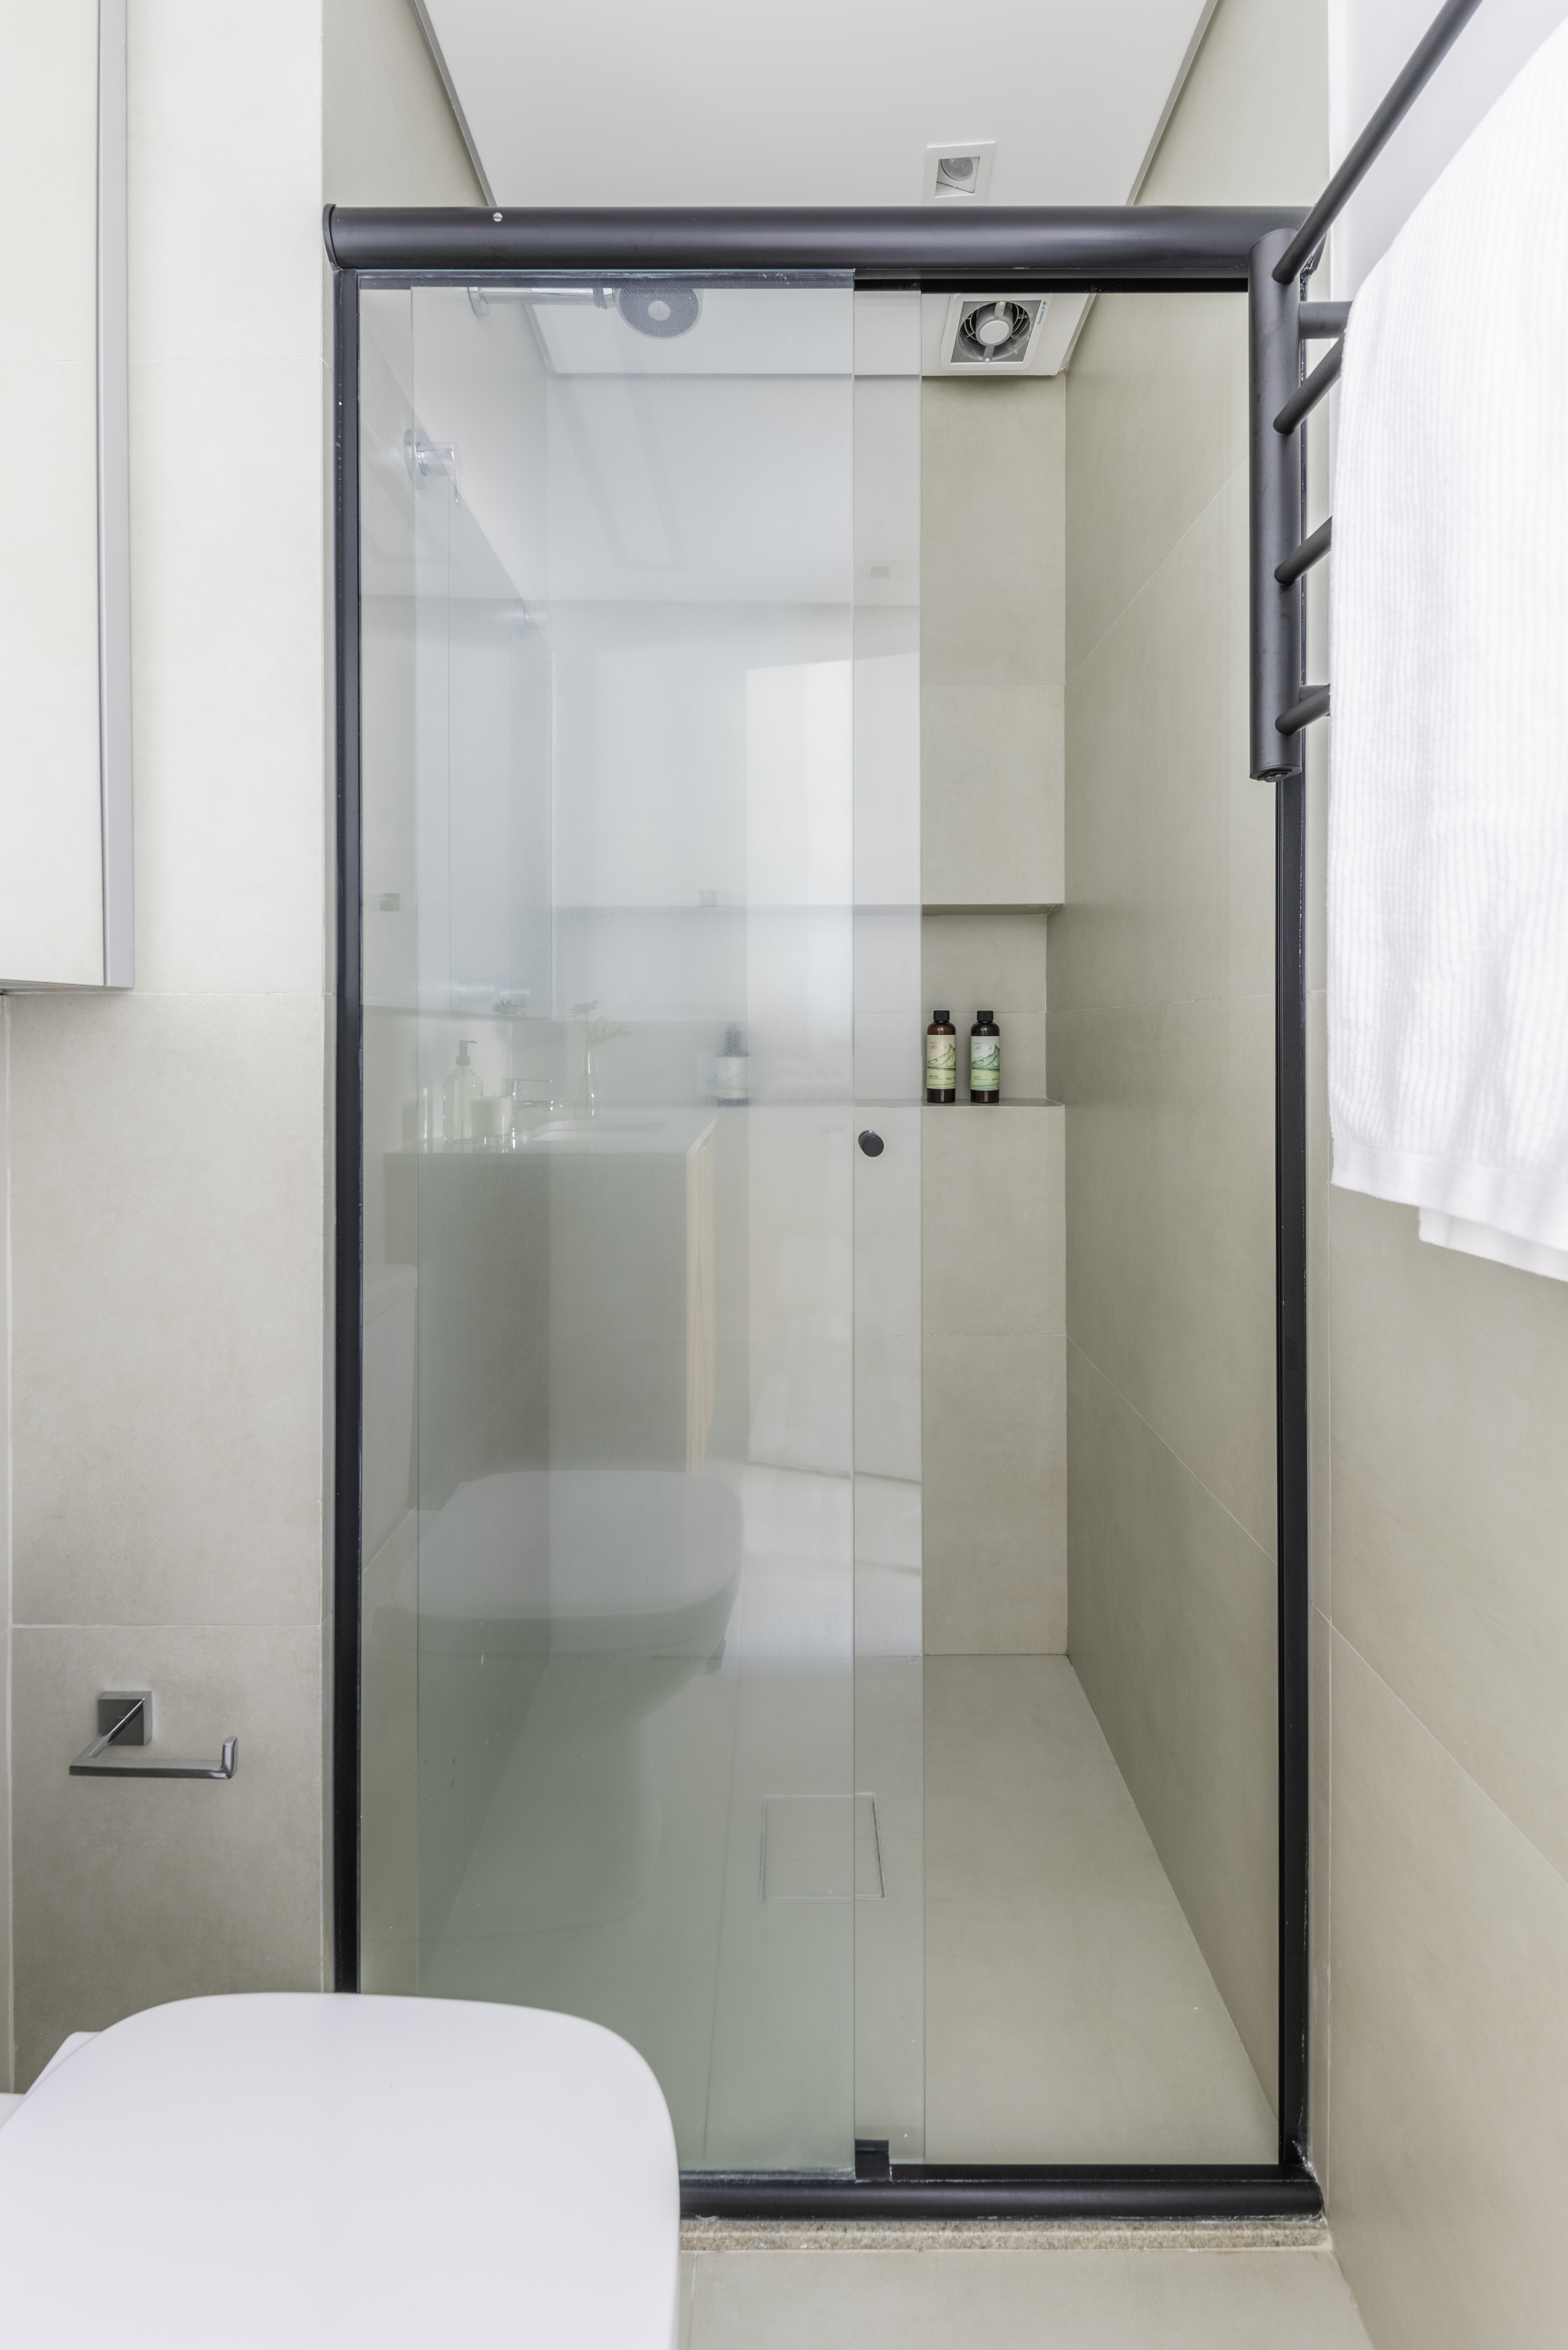 Ralo do banheiro: como escolher e manter a peça higienizada corretamente. Projeto de Studio Guadix. Na foto, banheiro minimalista com box de vidro.